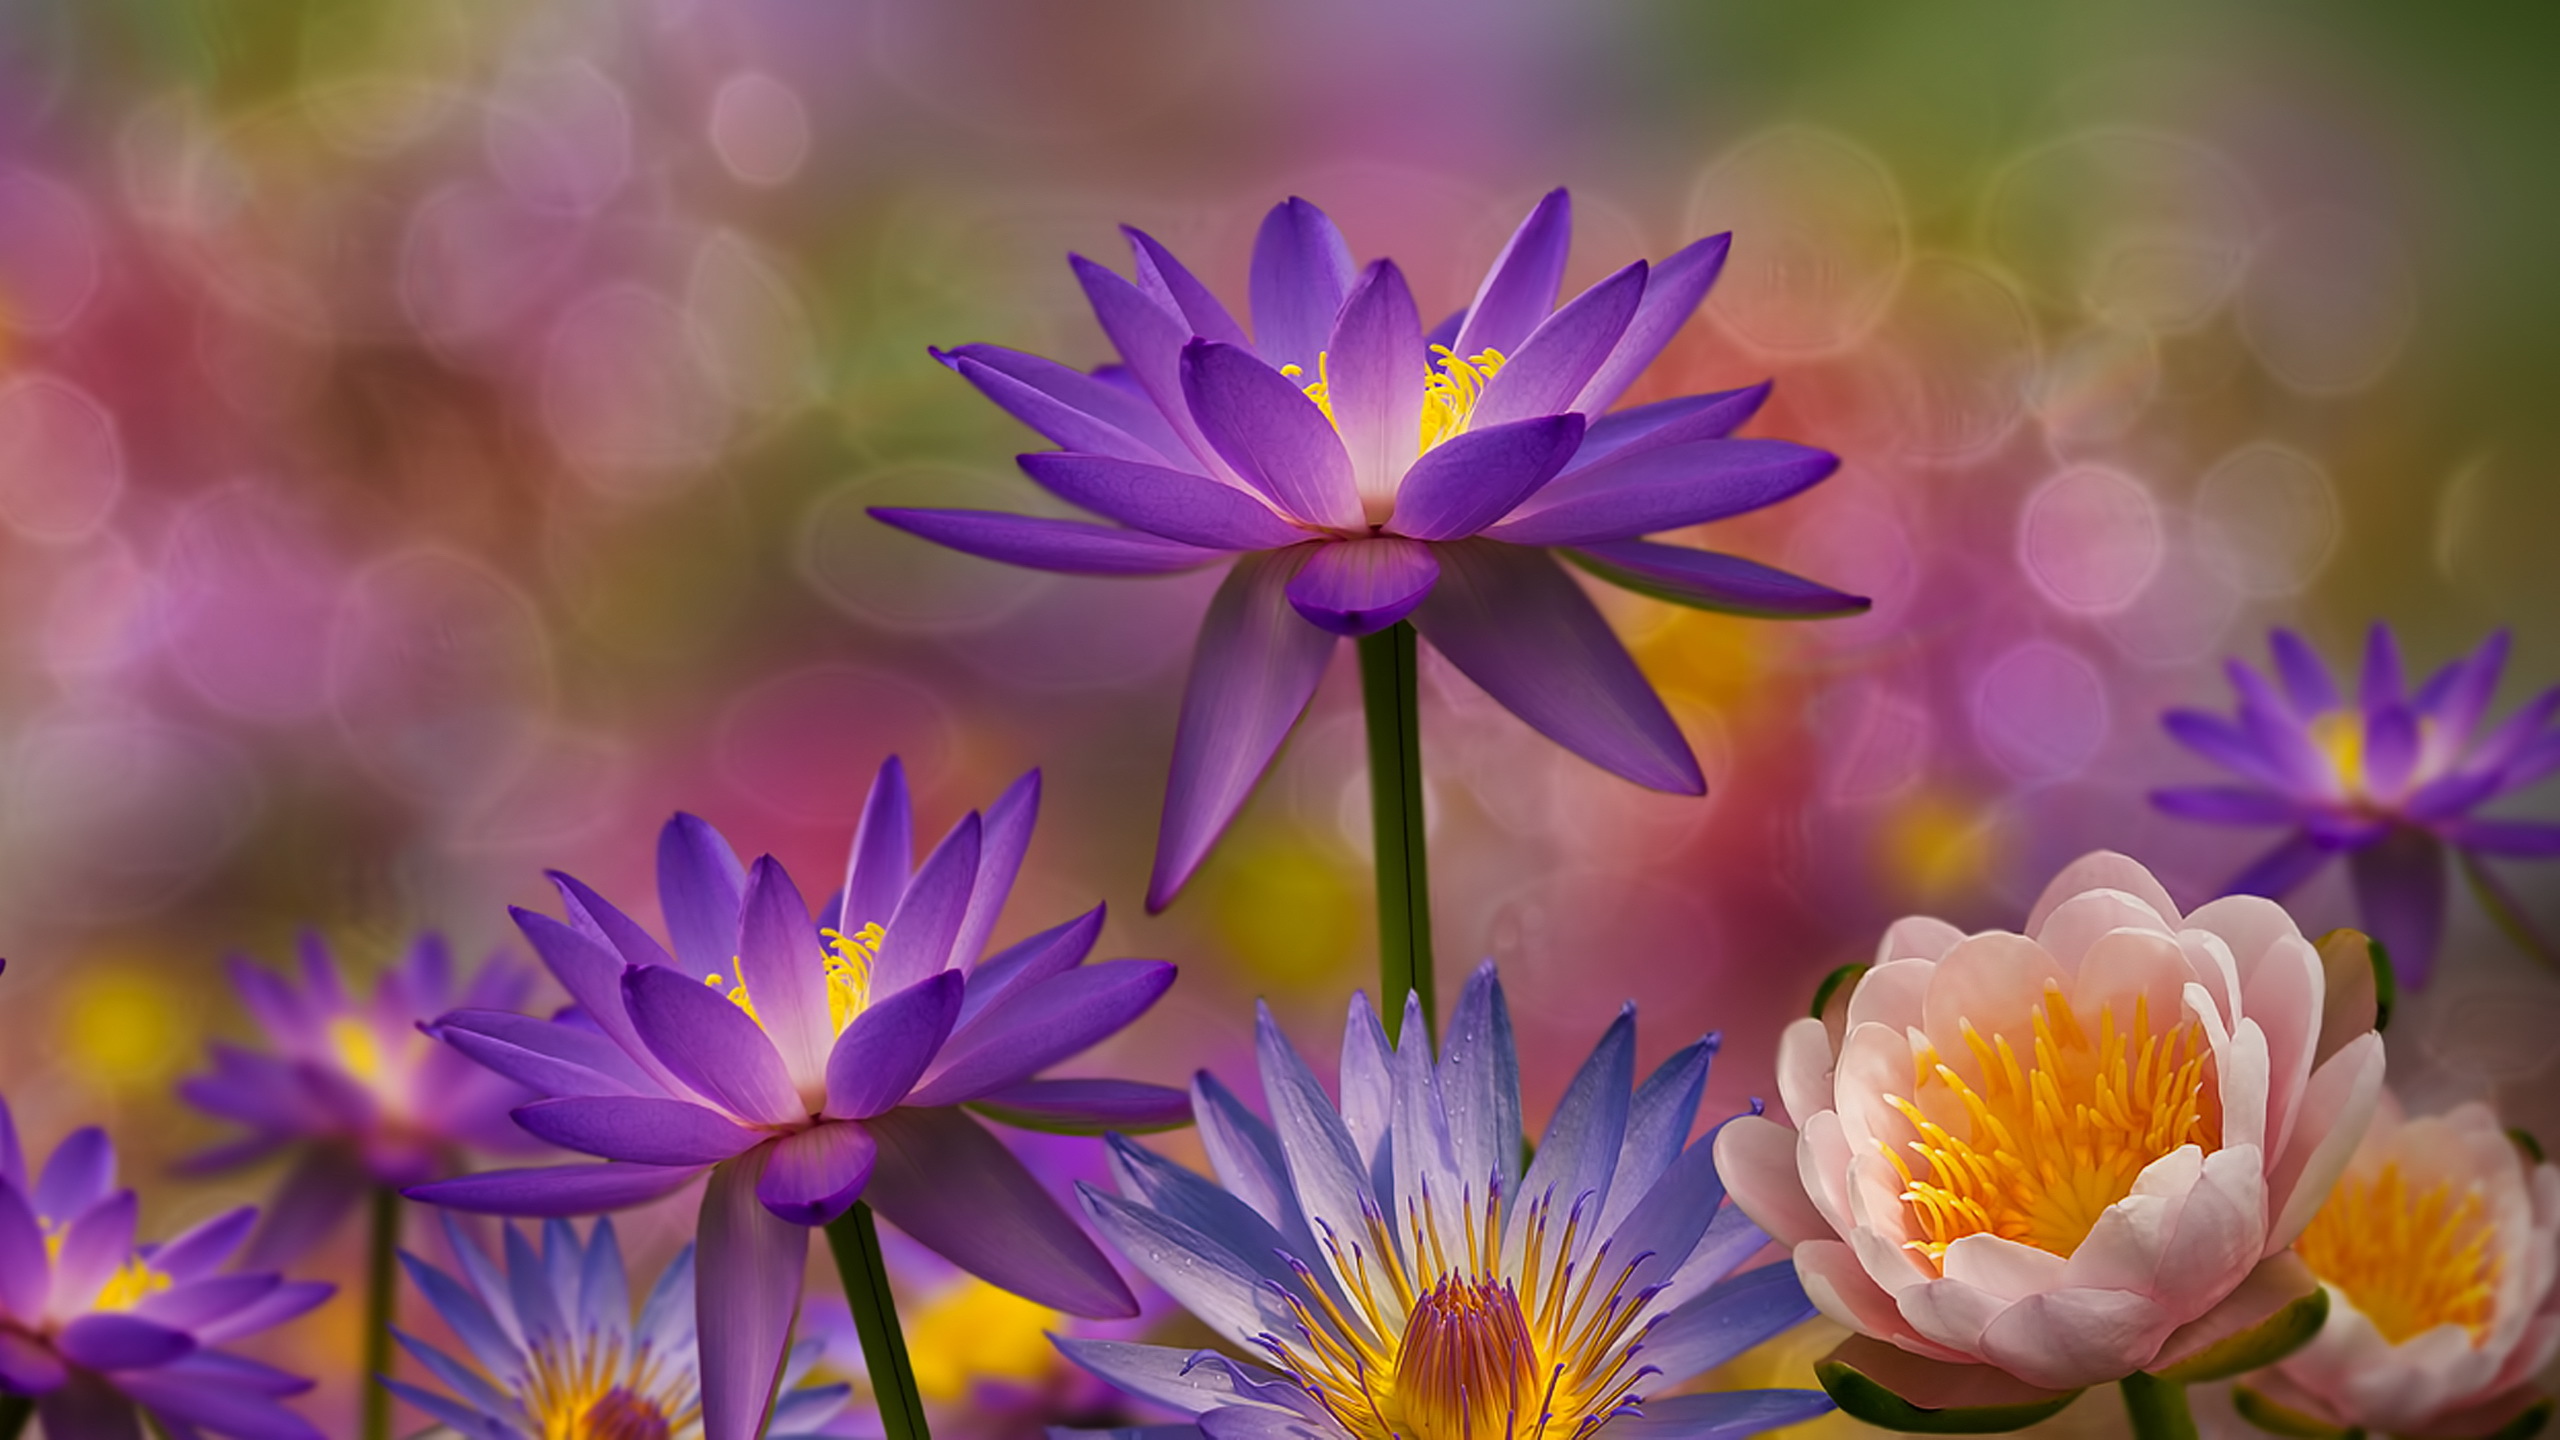 Descarga gratuita de fondo de pantalla para móvil de Flores, Loto, Flor, Bokeh, Nenúfar, Flor Purpura, Tierra/naturaleza.